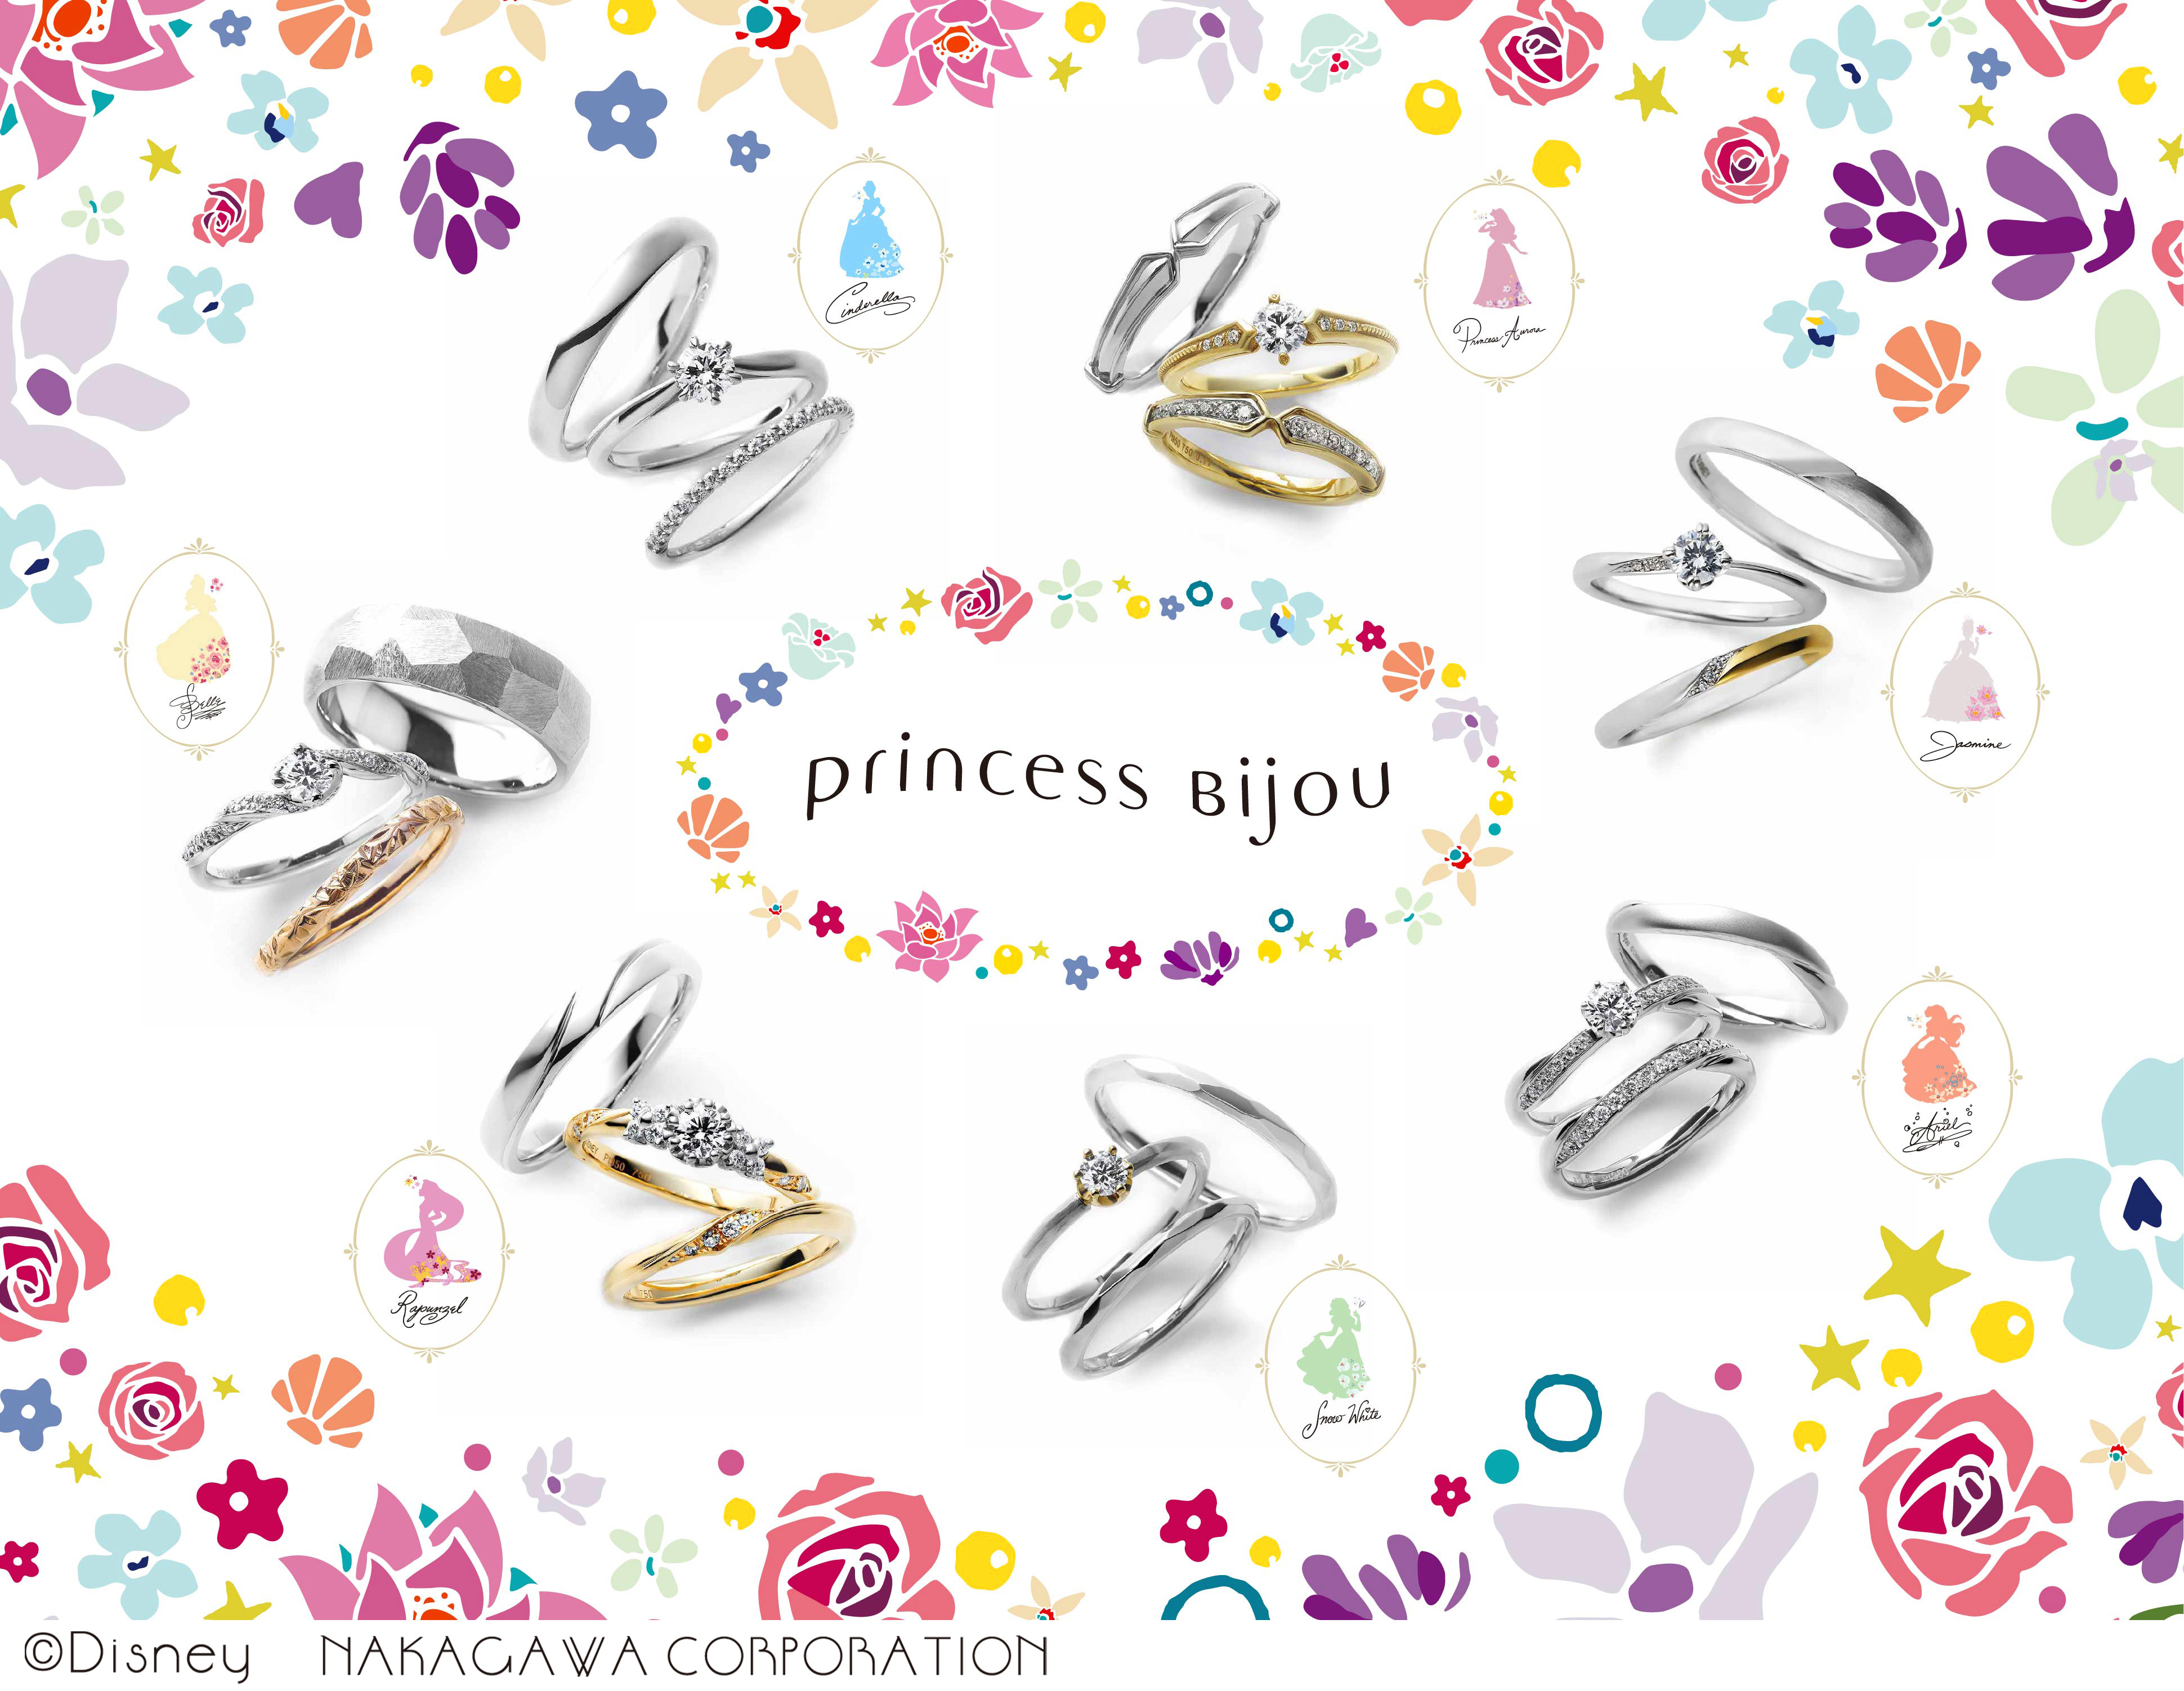 婚約指輪 結婚指輪ブランド Princess Bijou プリンセスビジュー から ジャスミンの新シリーズが登場 株式会社pikoのプレスリリース